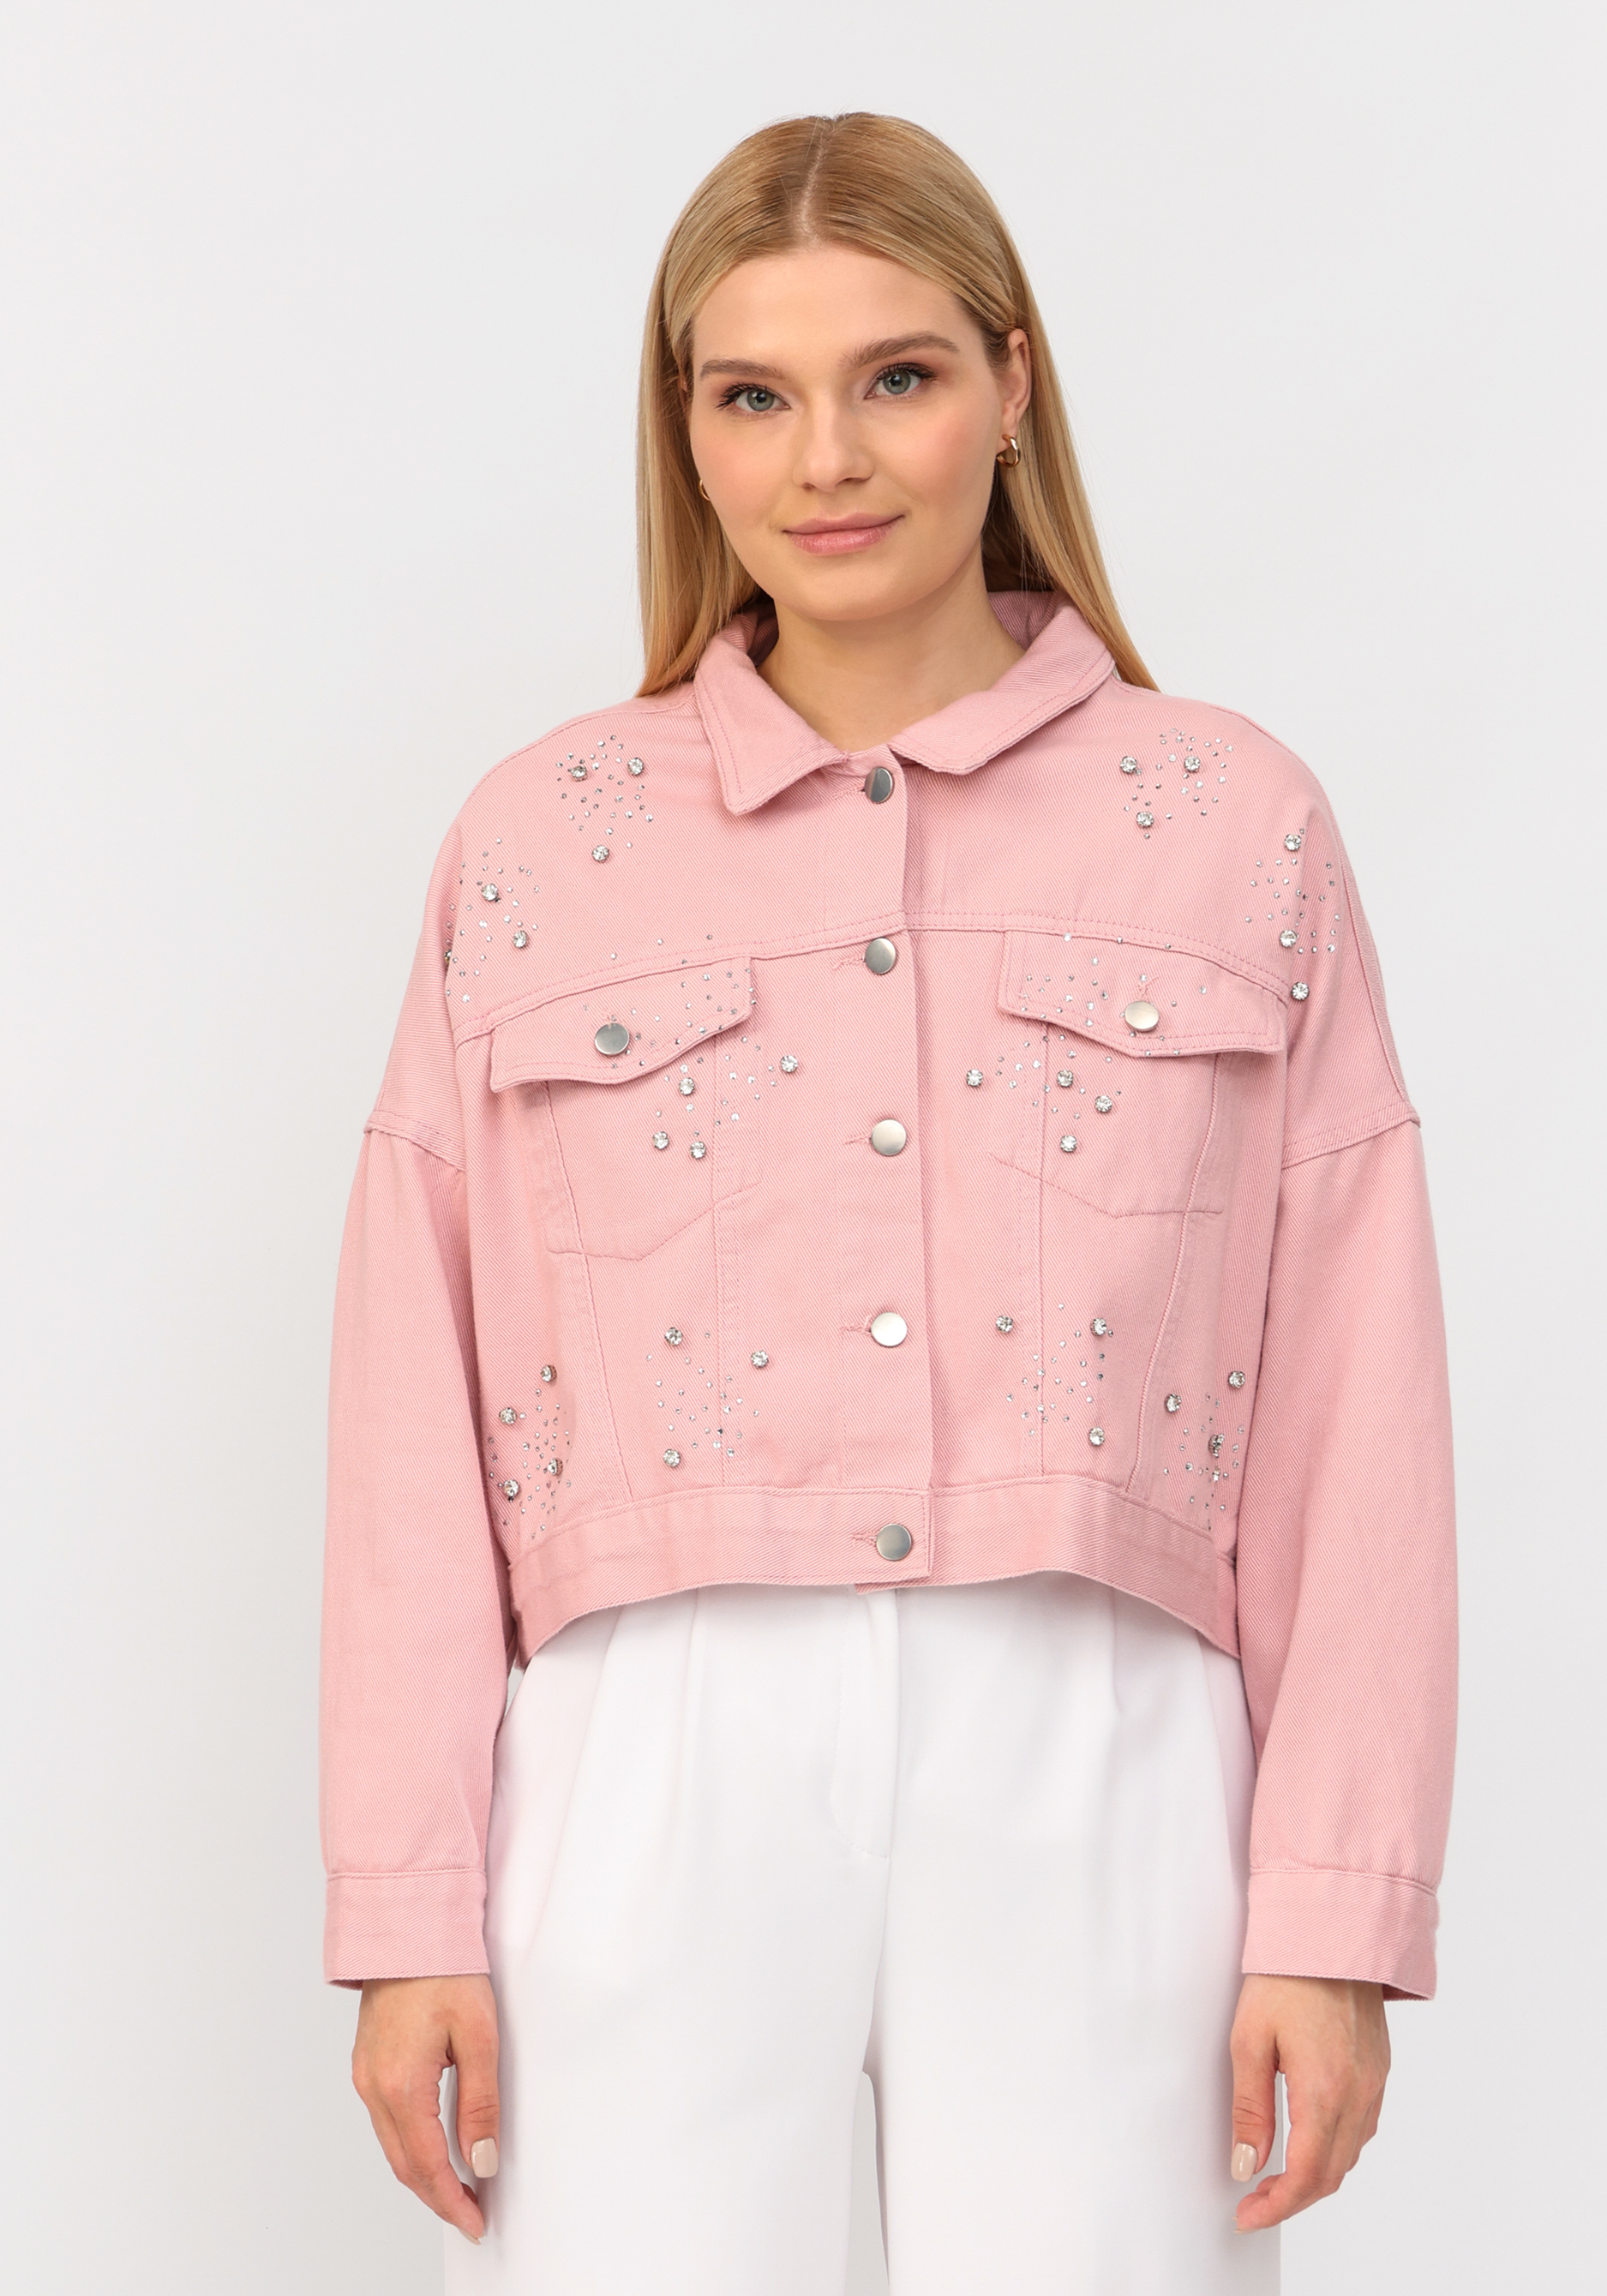 Джинсовая куртка со стразами No name, размер 52-54, цвет розовый - фото 9